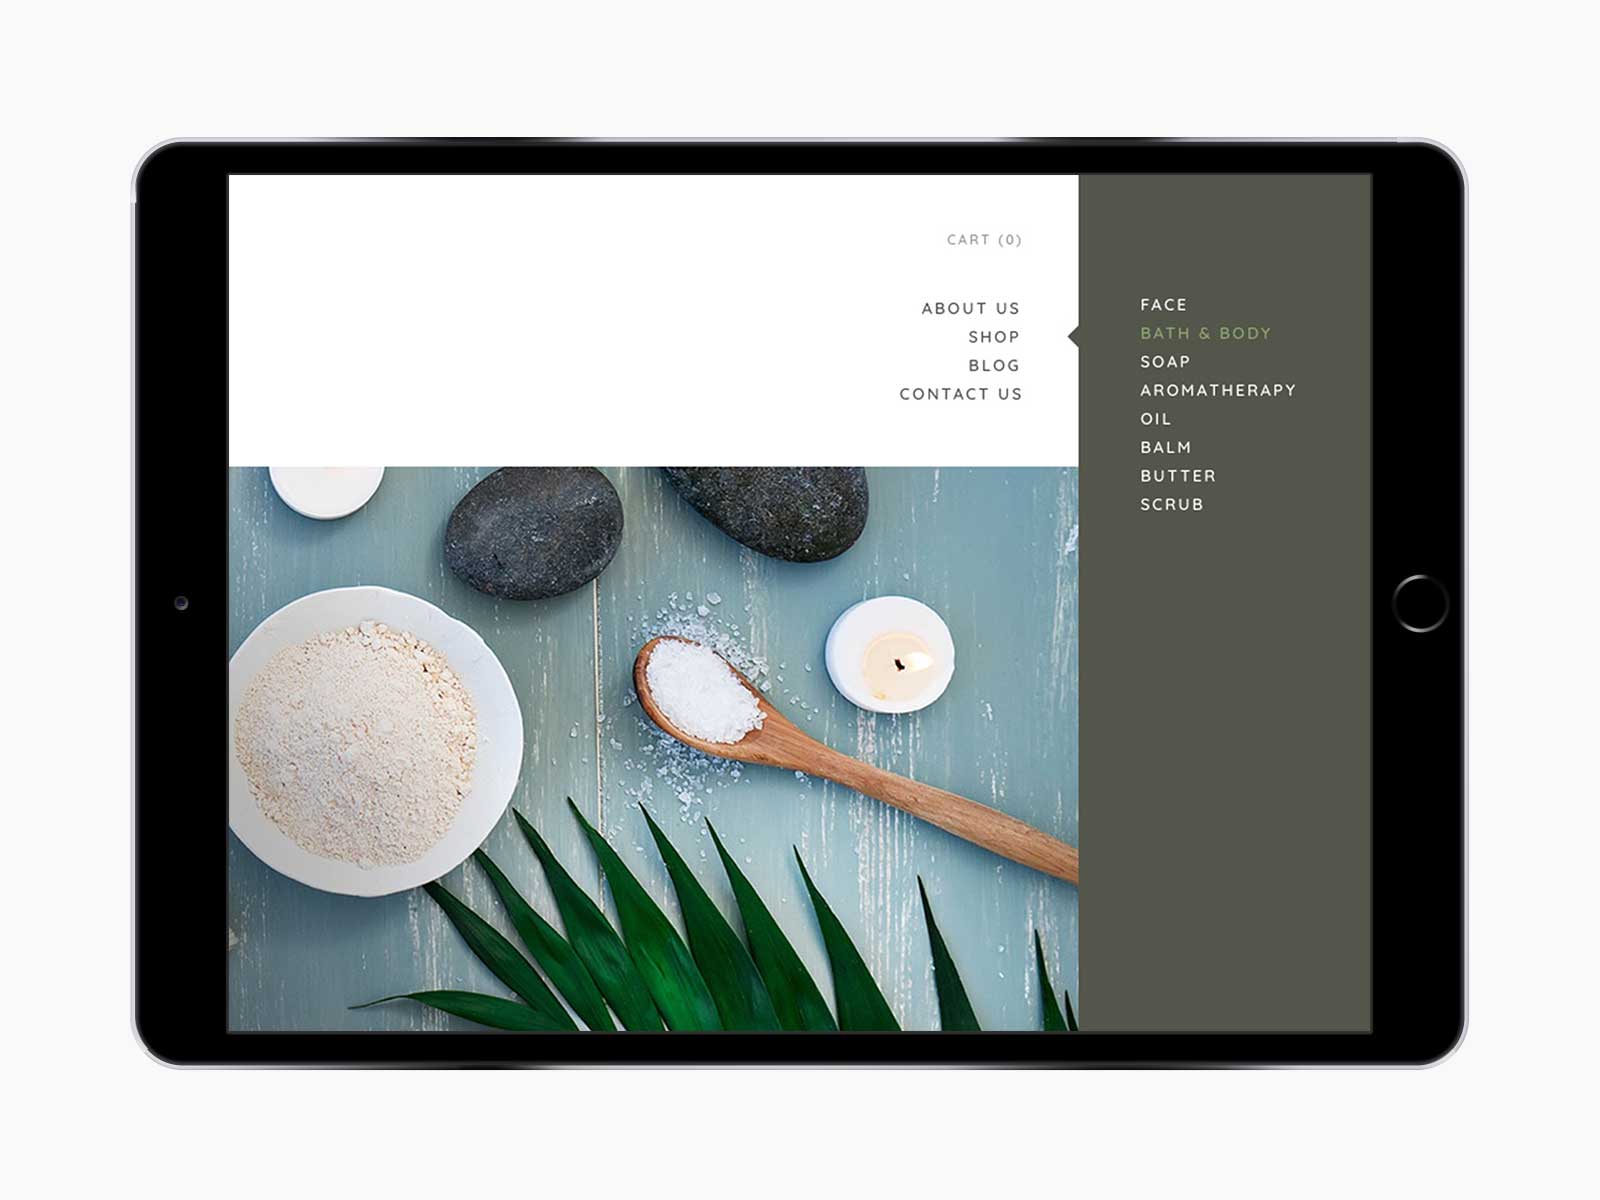 Leaf Skin Co. responsive website for navigation menu on iPad in landscape view